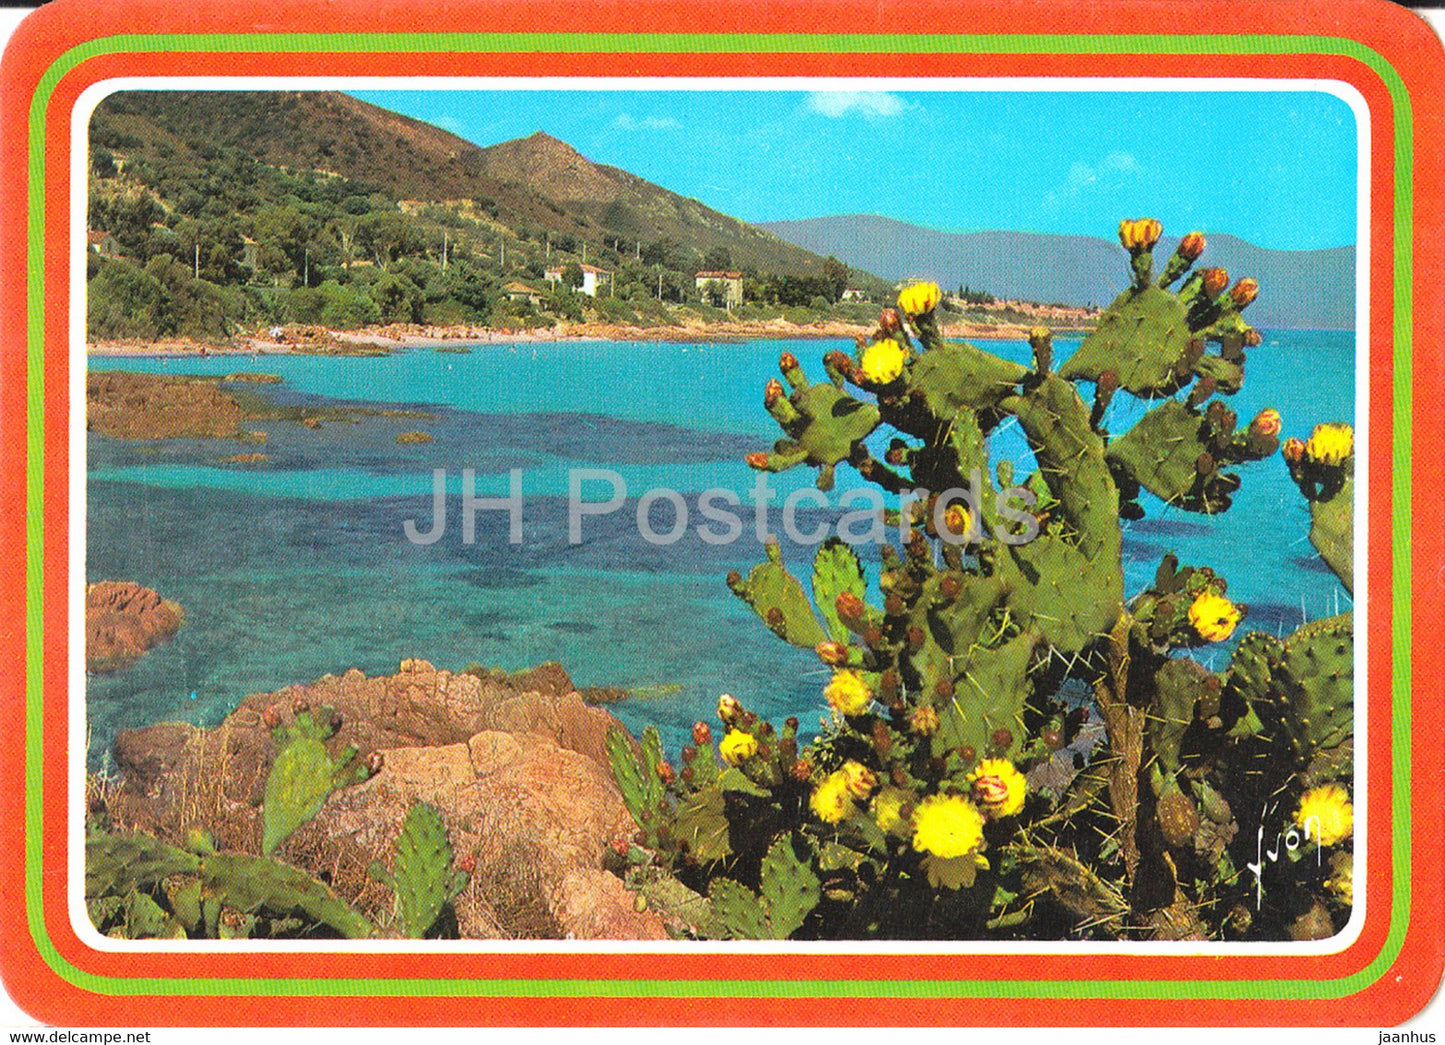 La Corse - Ile de Beaute - Les Fleurs epanouies que protegent les piquants du Figuier de Barbarie - France - unused - JH Postcards